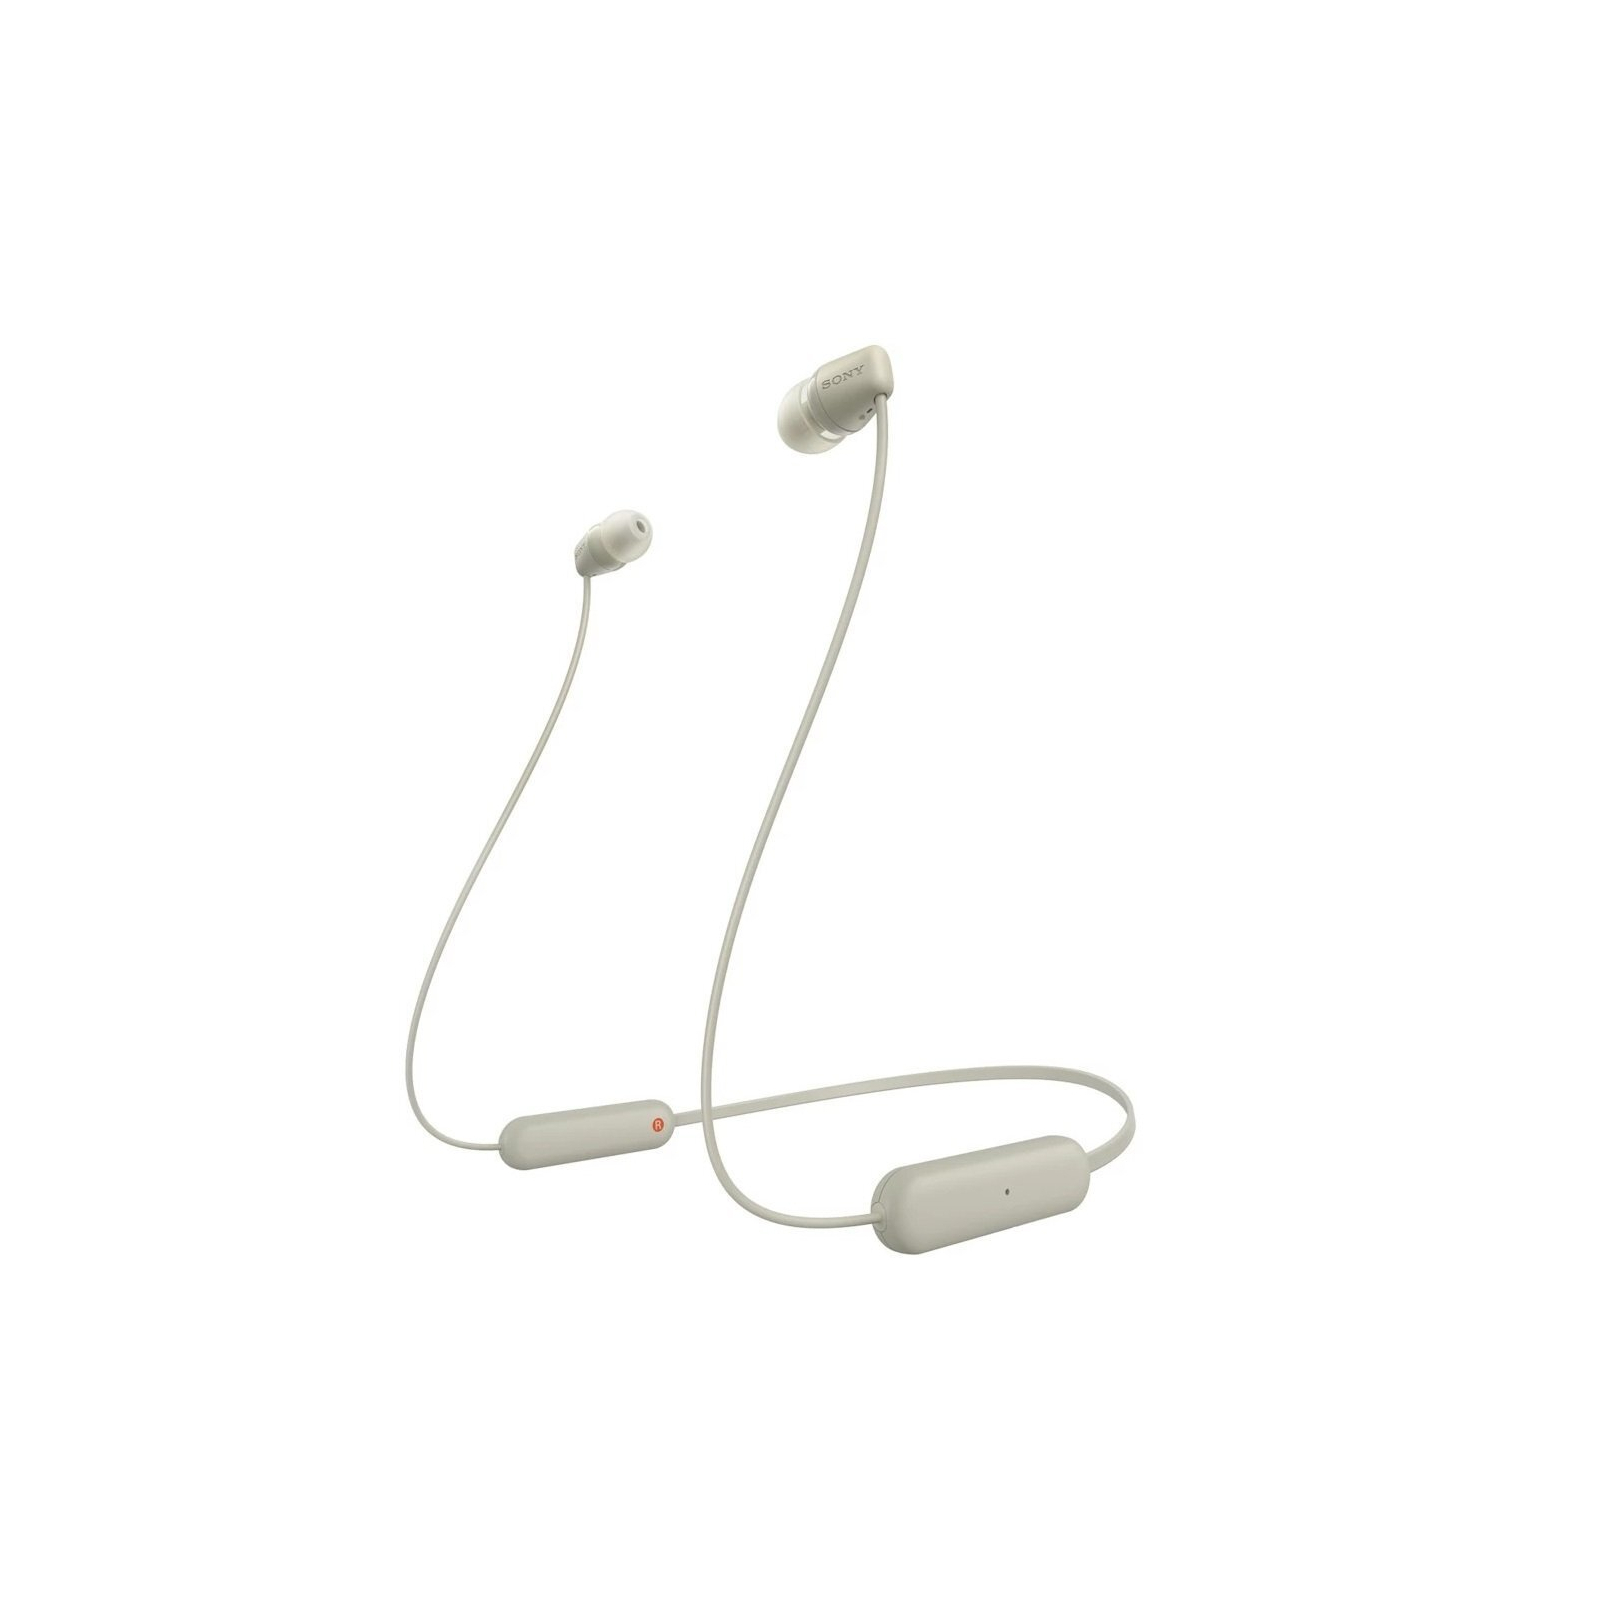 Навушники Sony WI-C100 White (WIC100W.CE7)